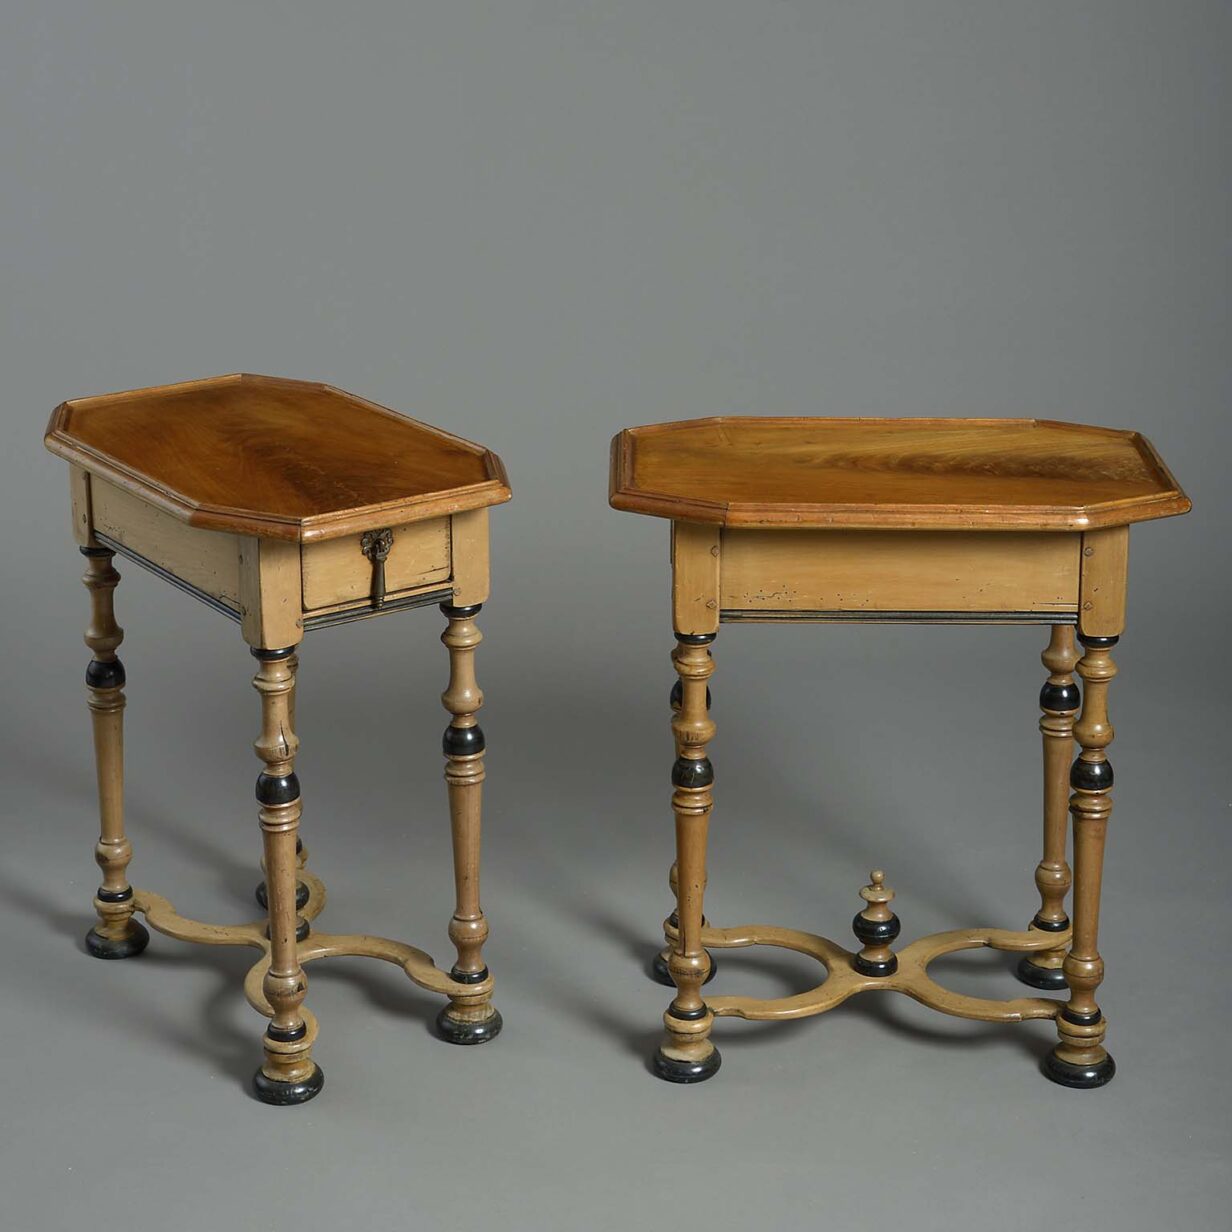 Pair of late 19th century mahogany & ebony end tables